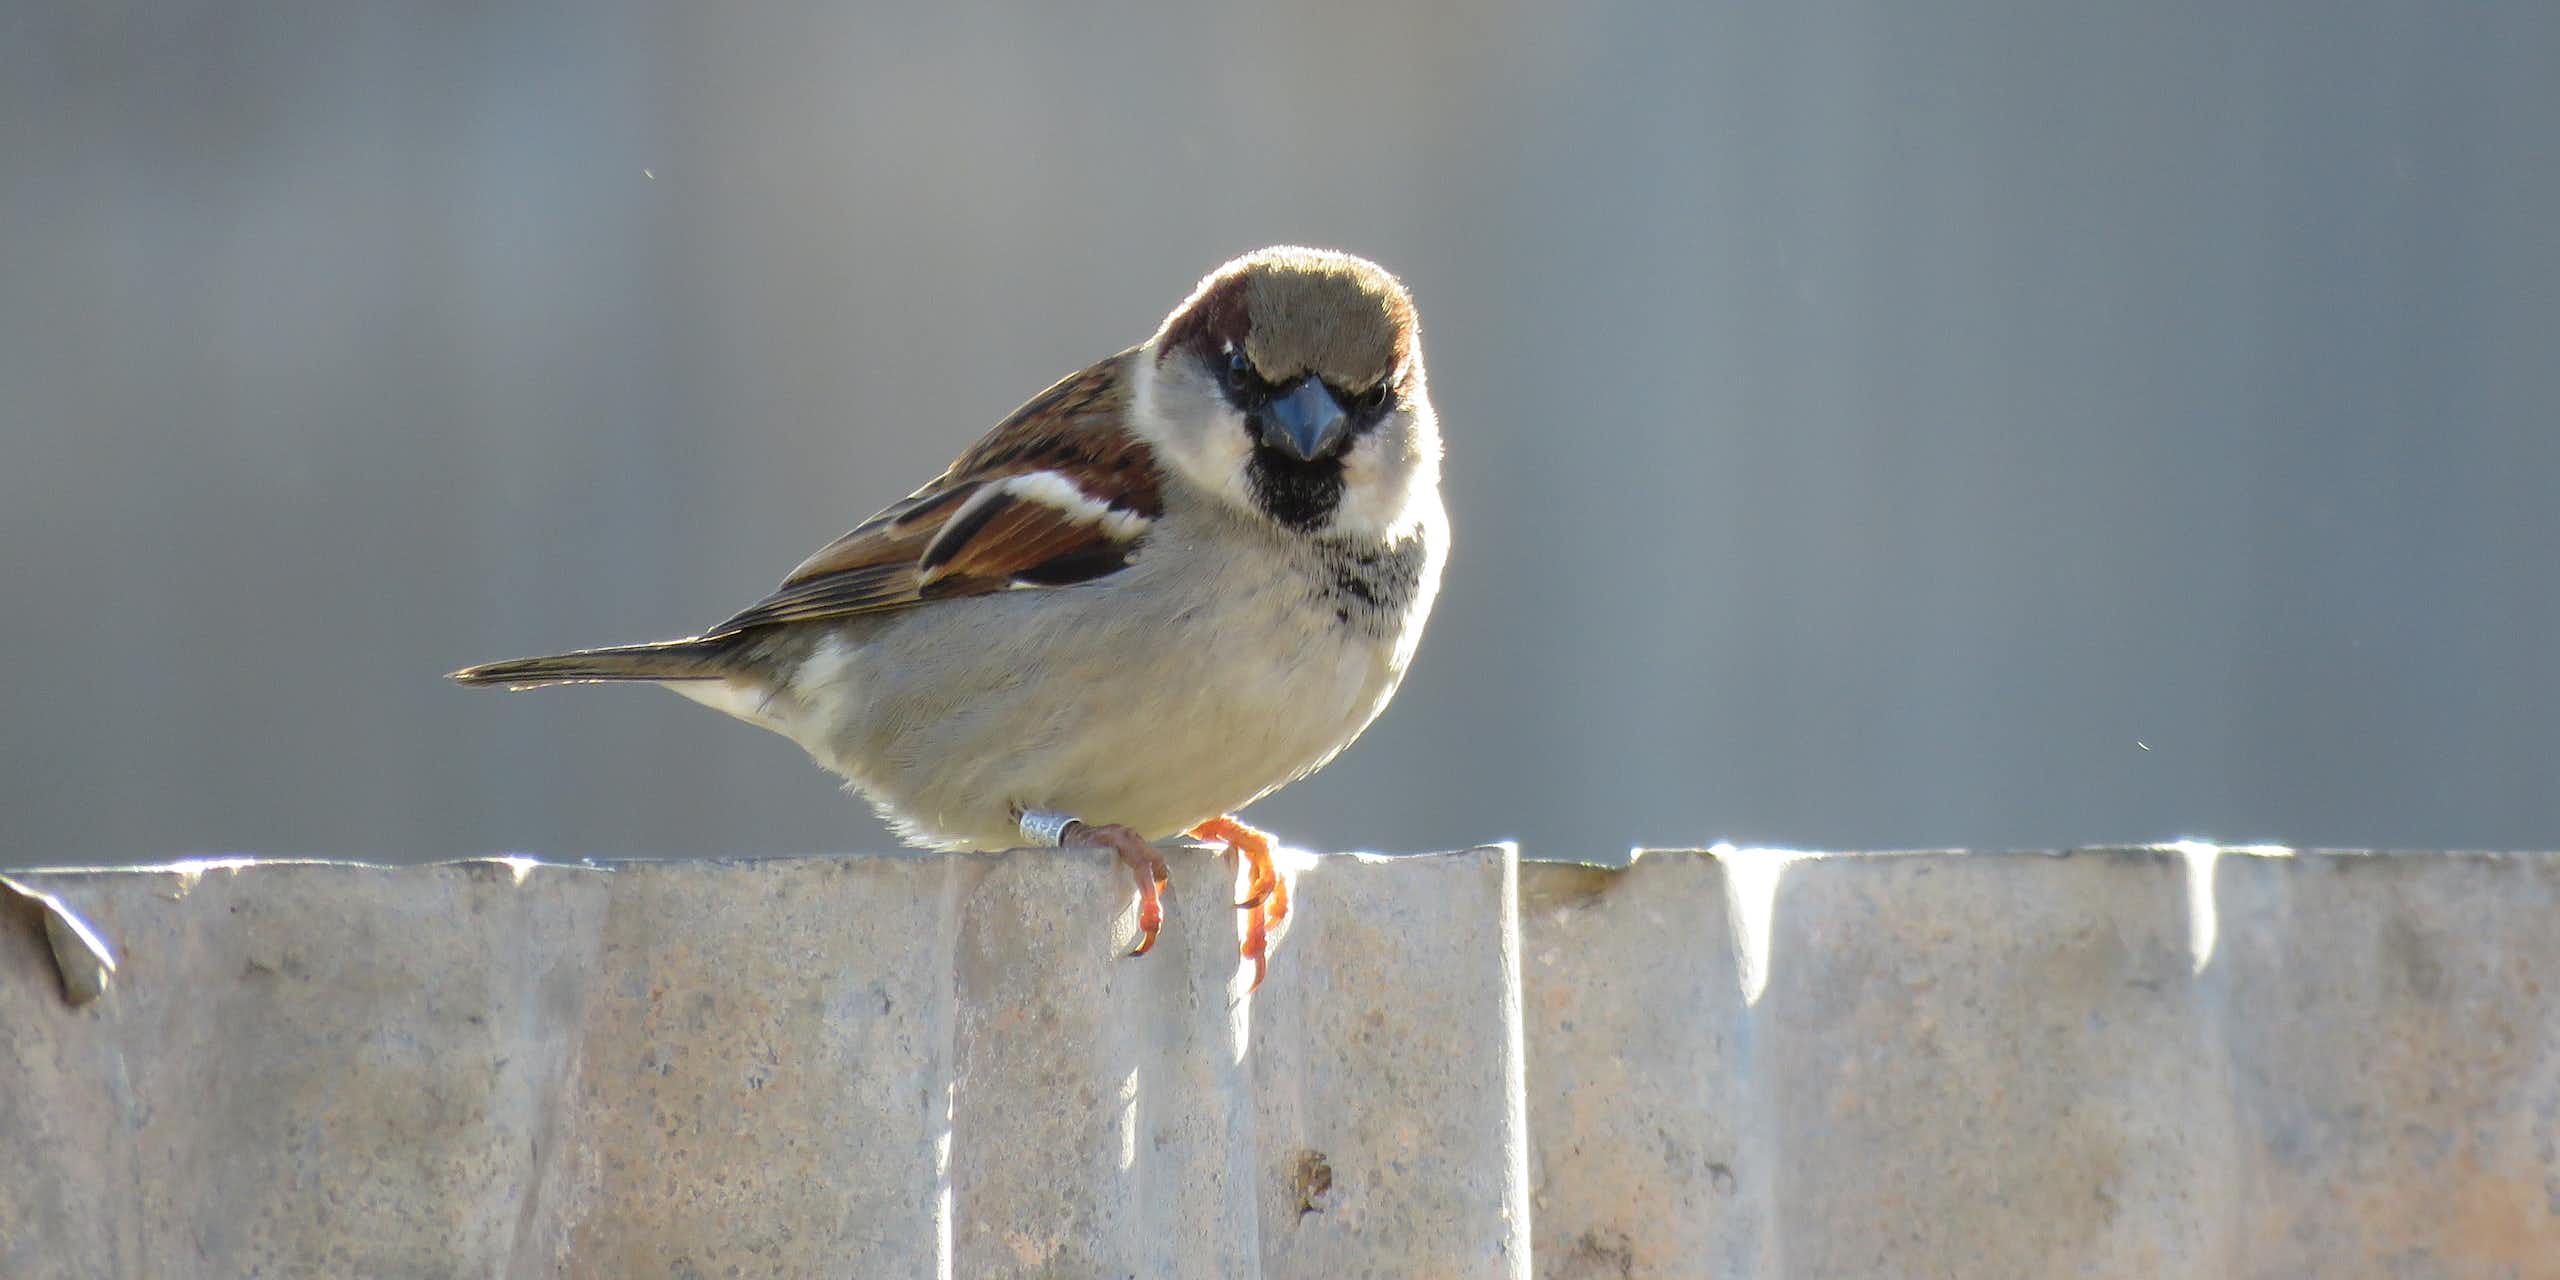 A male house sparrow on a fence